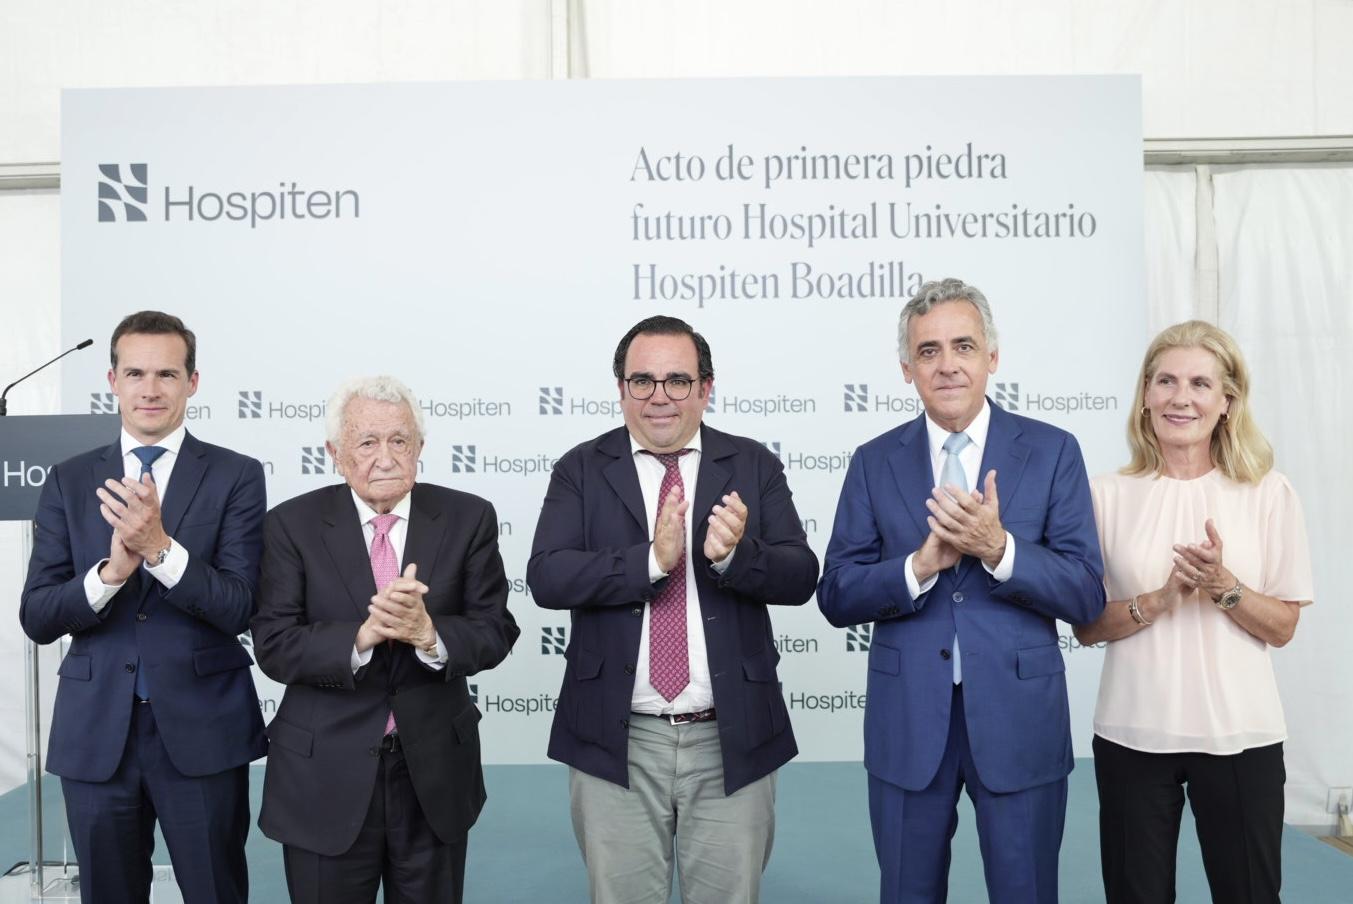 Hospiten pone la primera piedra de su futuro hospital universitario en Madrid